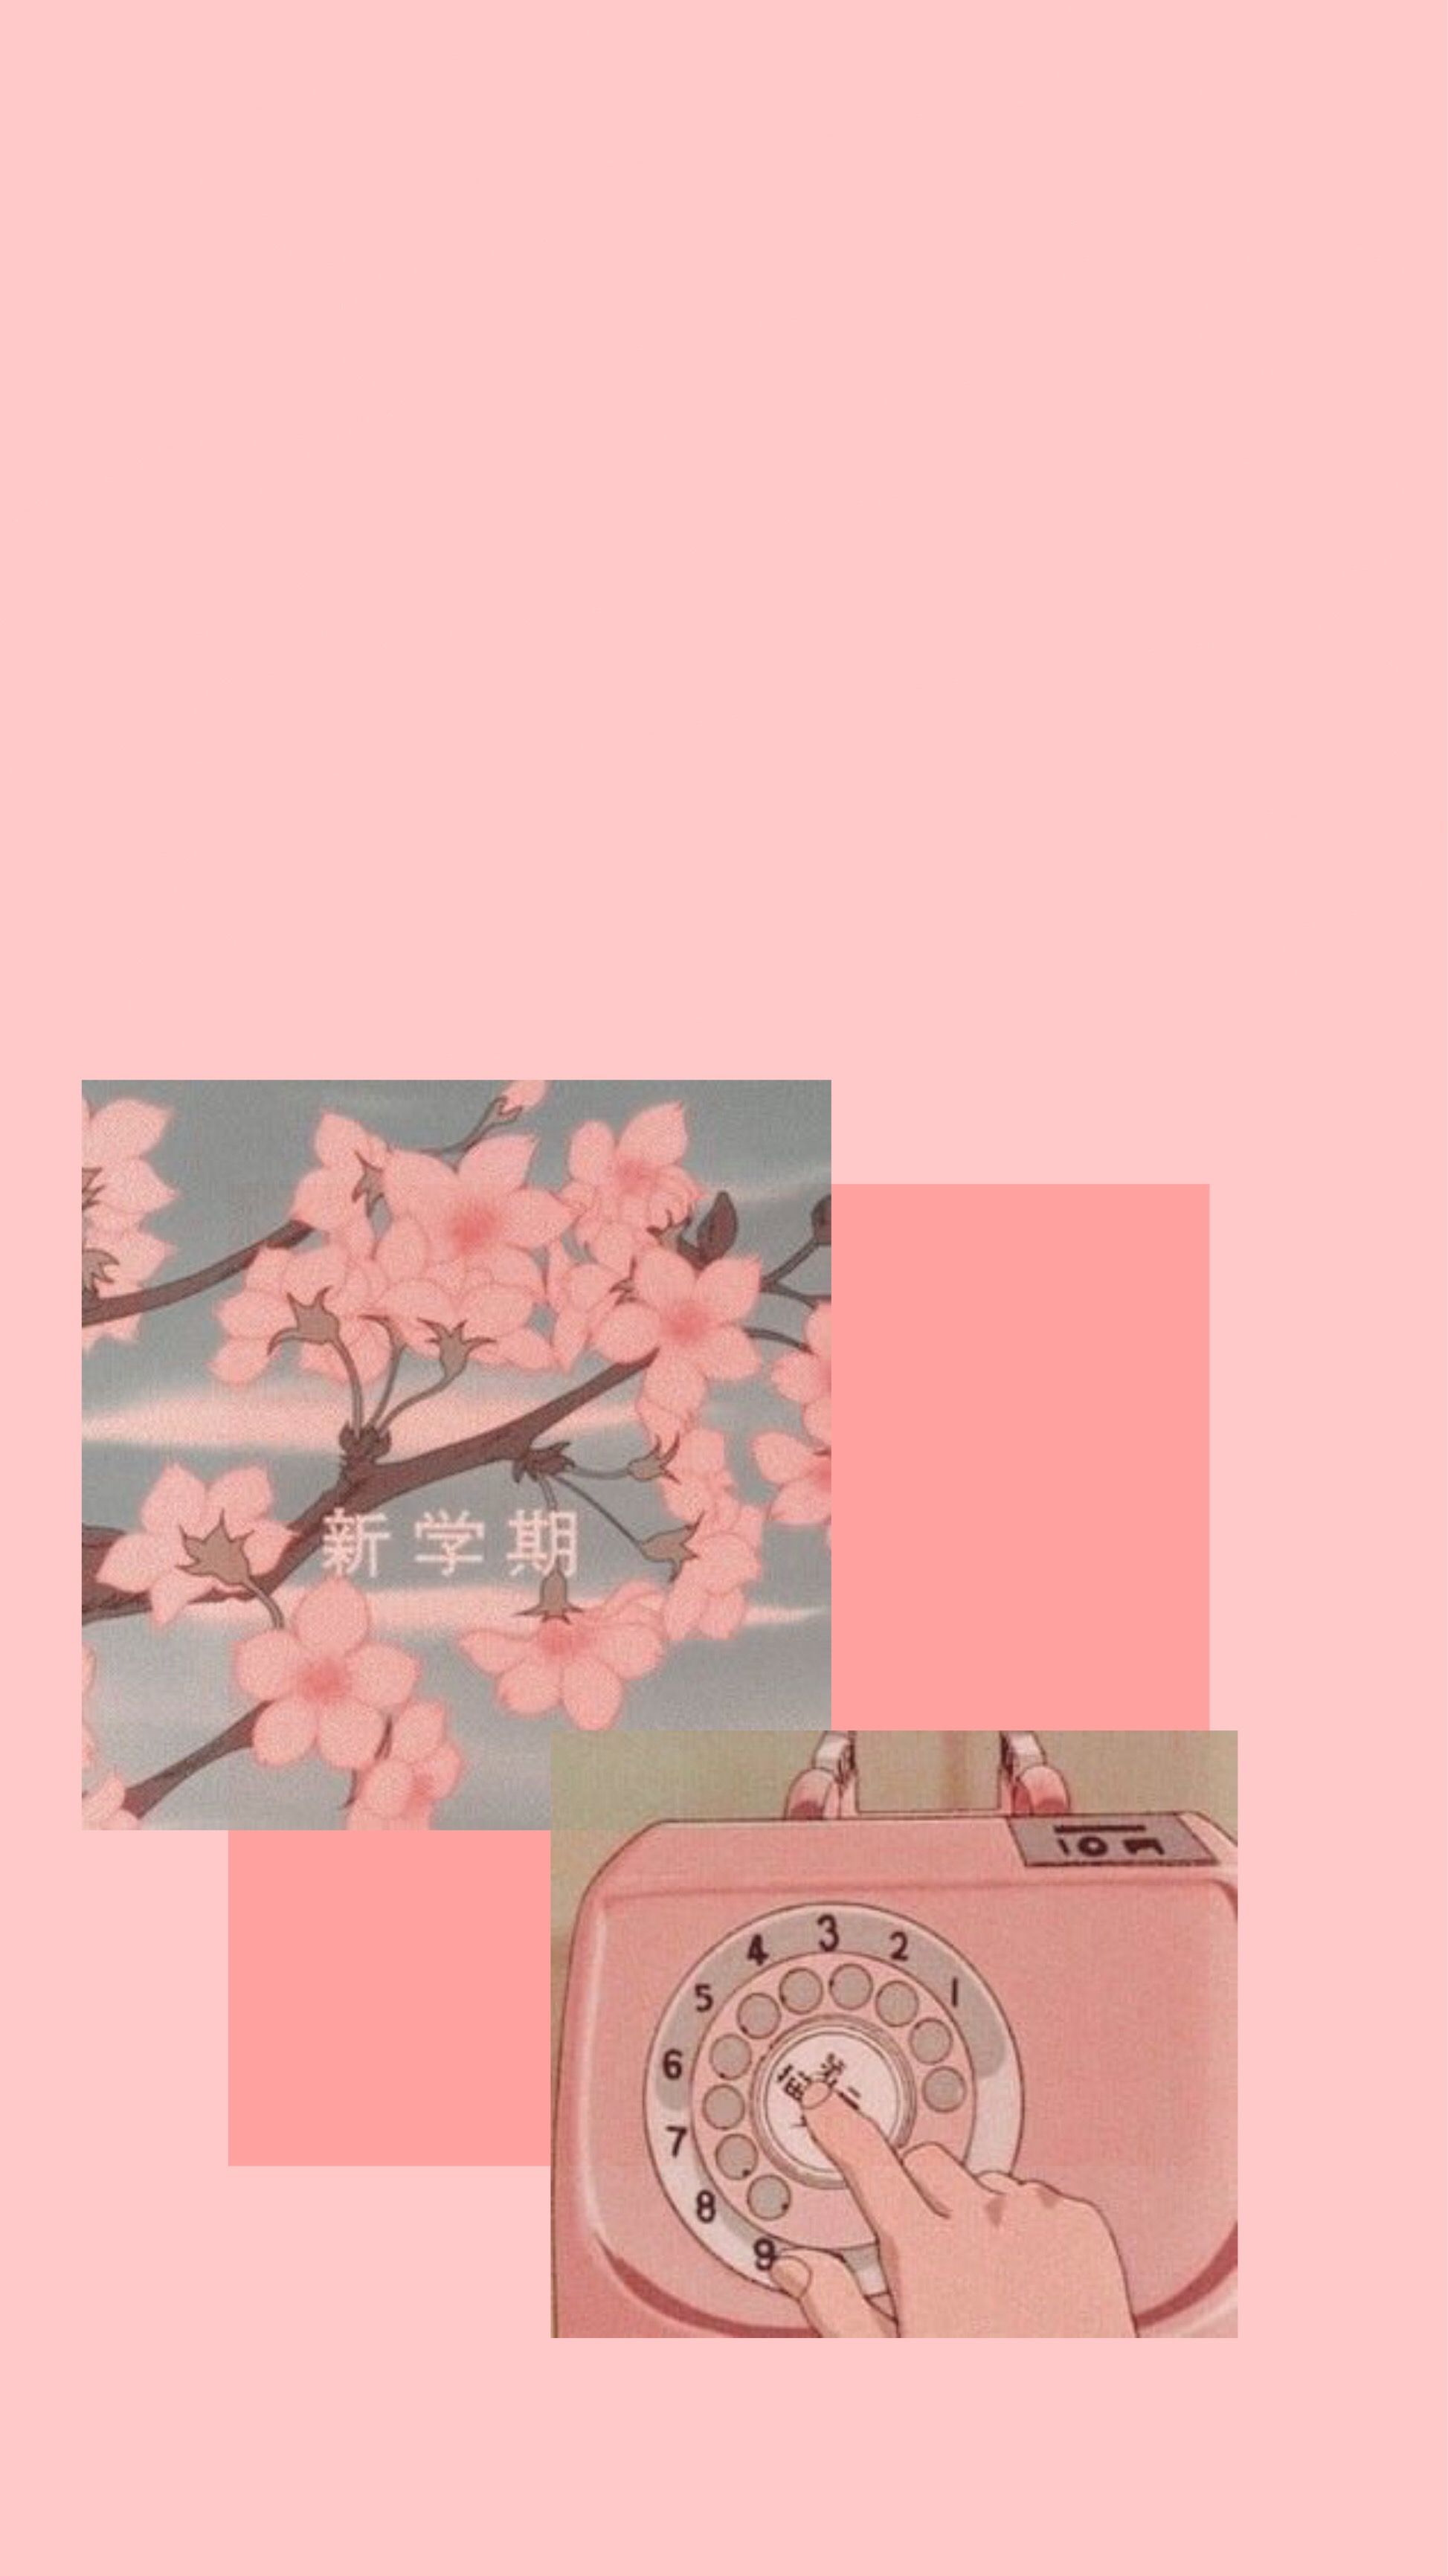 Aesthetic Background Japanese Cherry Blossom Wallpaper